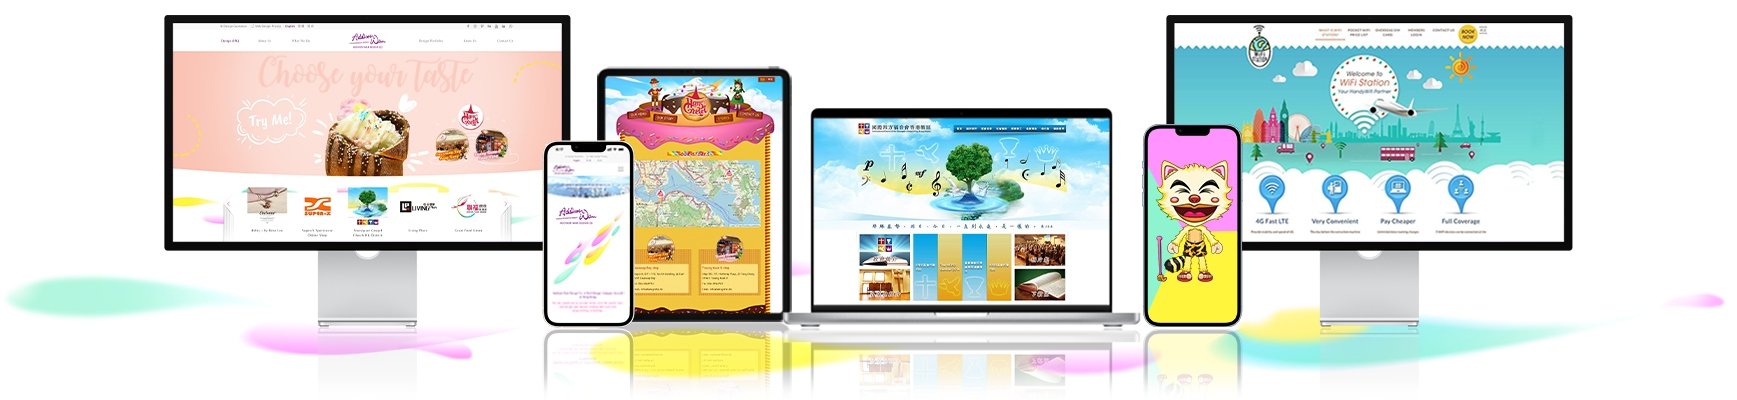 網頁設計香港 - 網頁設計和網上商店網站項目的詳細與透明定價